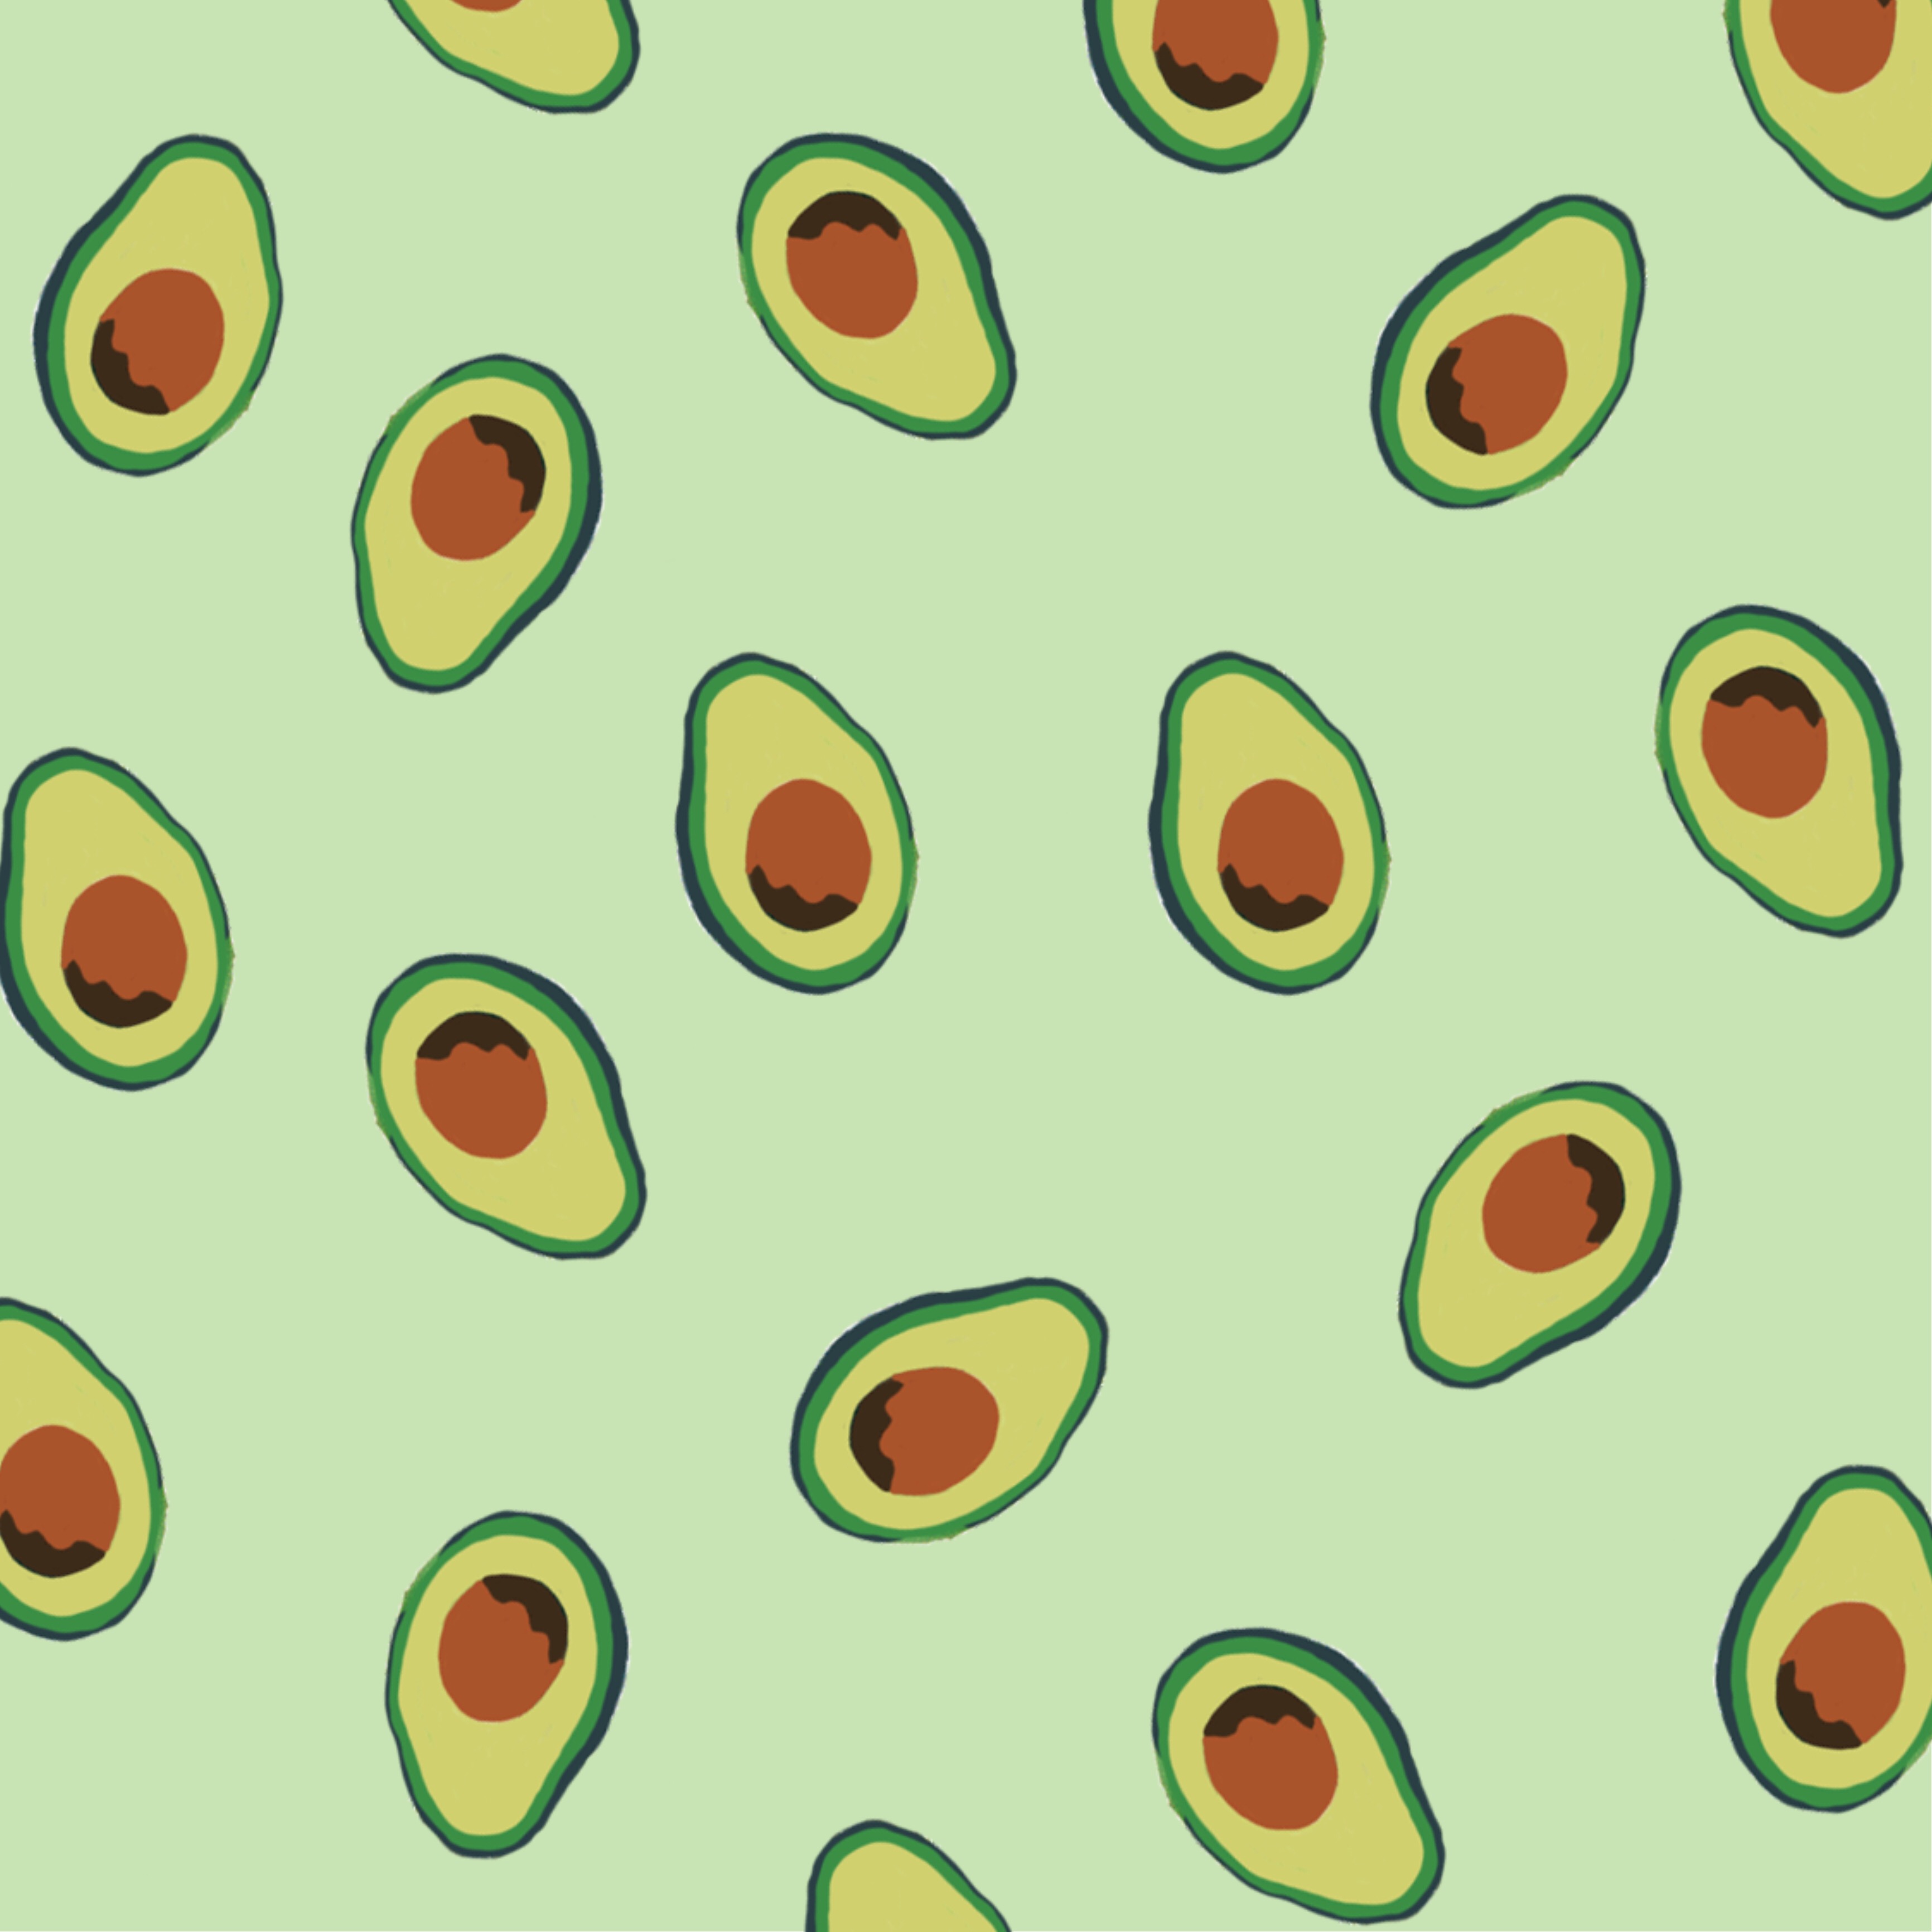 #avocadoday #avocado #wallpaper #background #green - Aesthetic Avocado Background , HD Wallpaper & Backgrounds